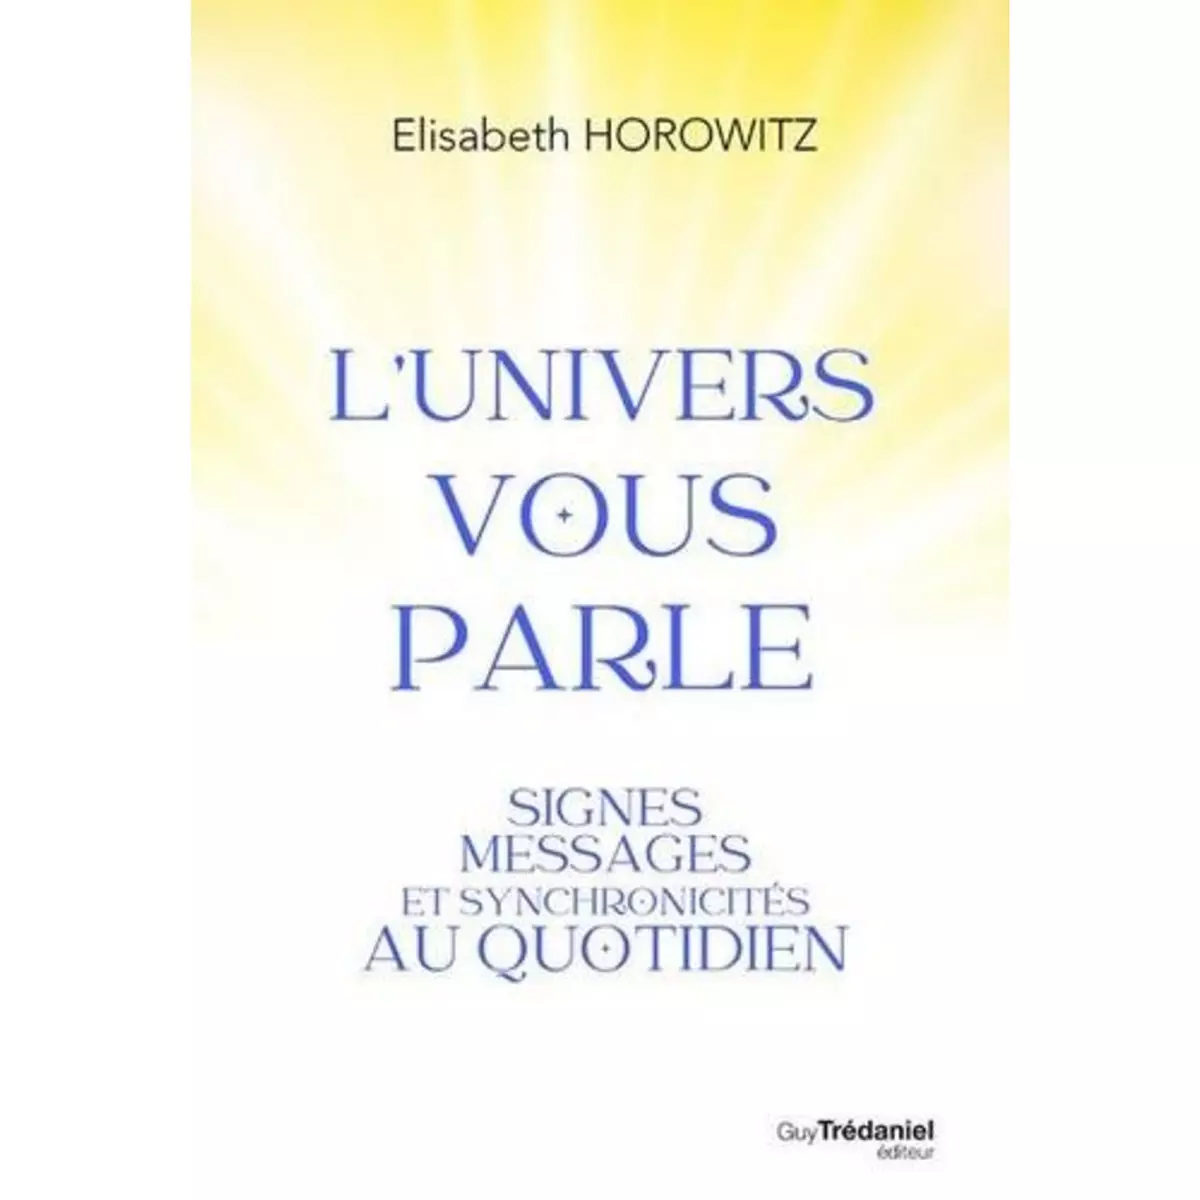  L'UNIVERS VOUS PARLE. SIGNES, MESSAGES ET SYNCHRONOCITES AU QUOTIDIEN, Horowitz Elisabeth